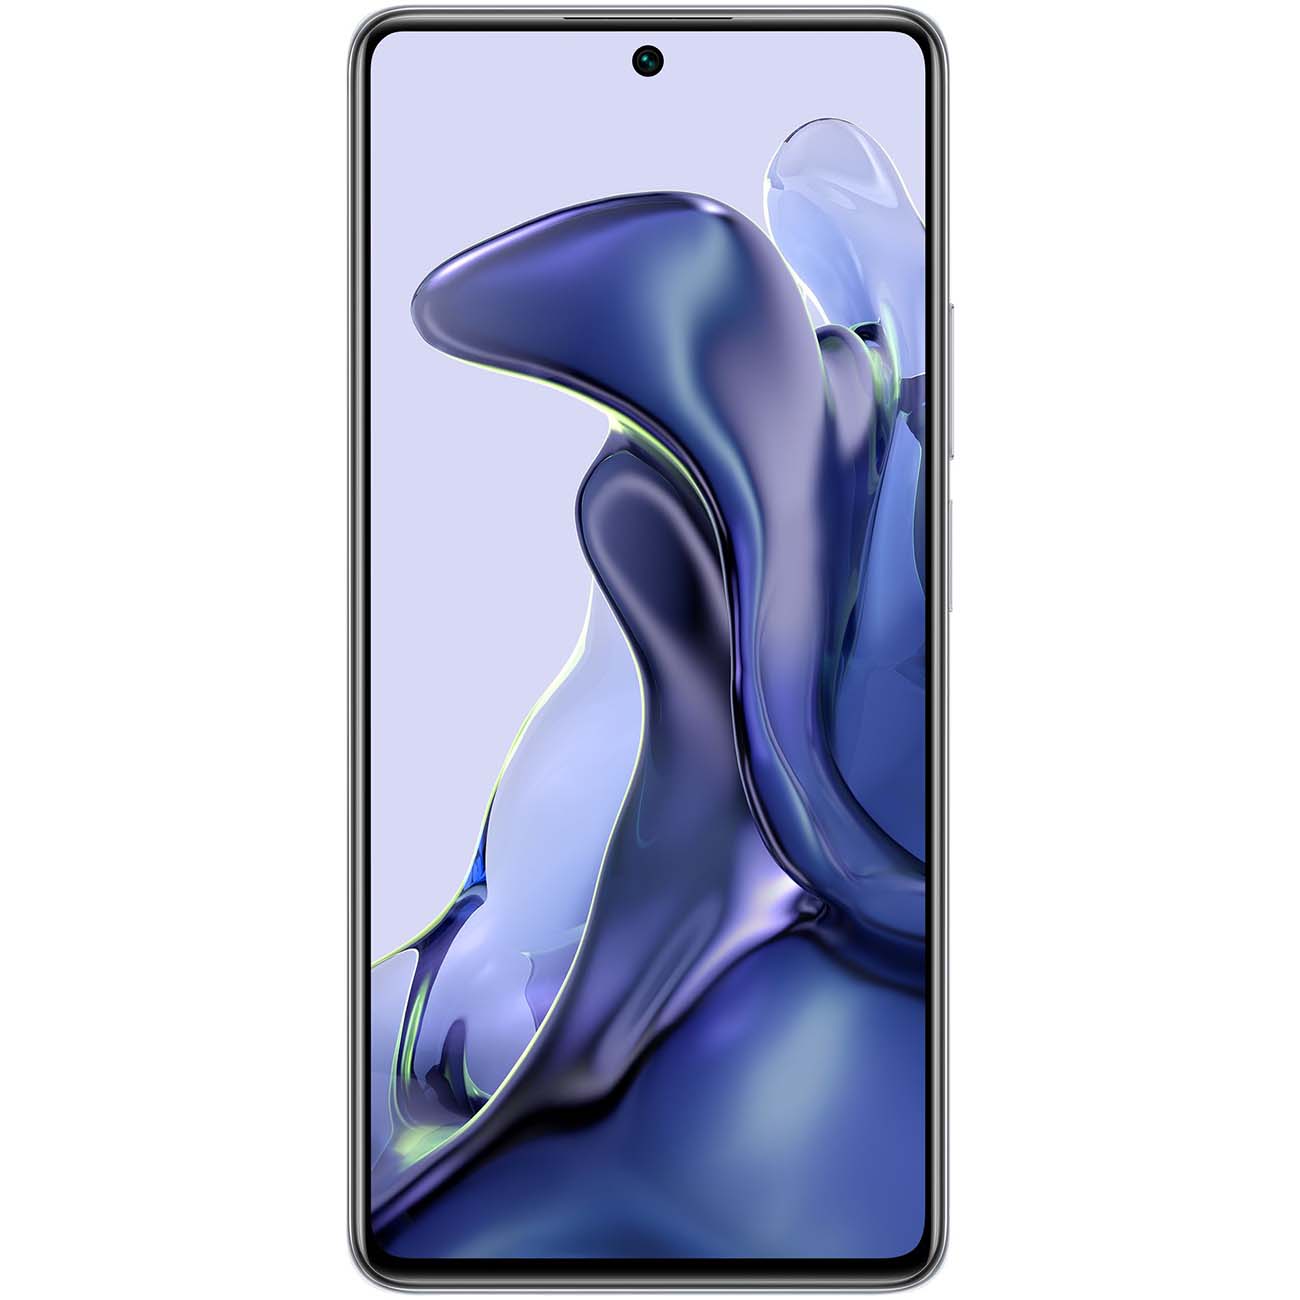 Купить смартфон xiaomi 11t 8gb+128gb blue Смартфоны в официальном магазине Apple, Samsung, Xiaomi. iPixel.ru Купить, заказ, кредит, рассрочка, отзывы,  характеристики, цена,  фотографии, в подарок.